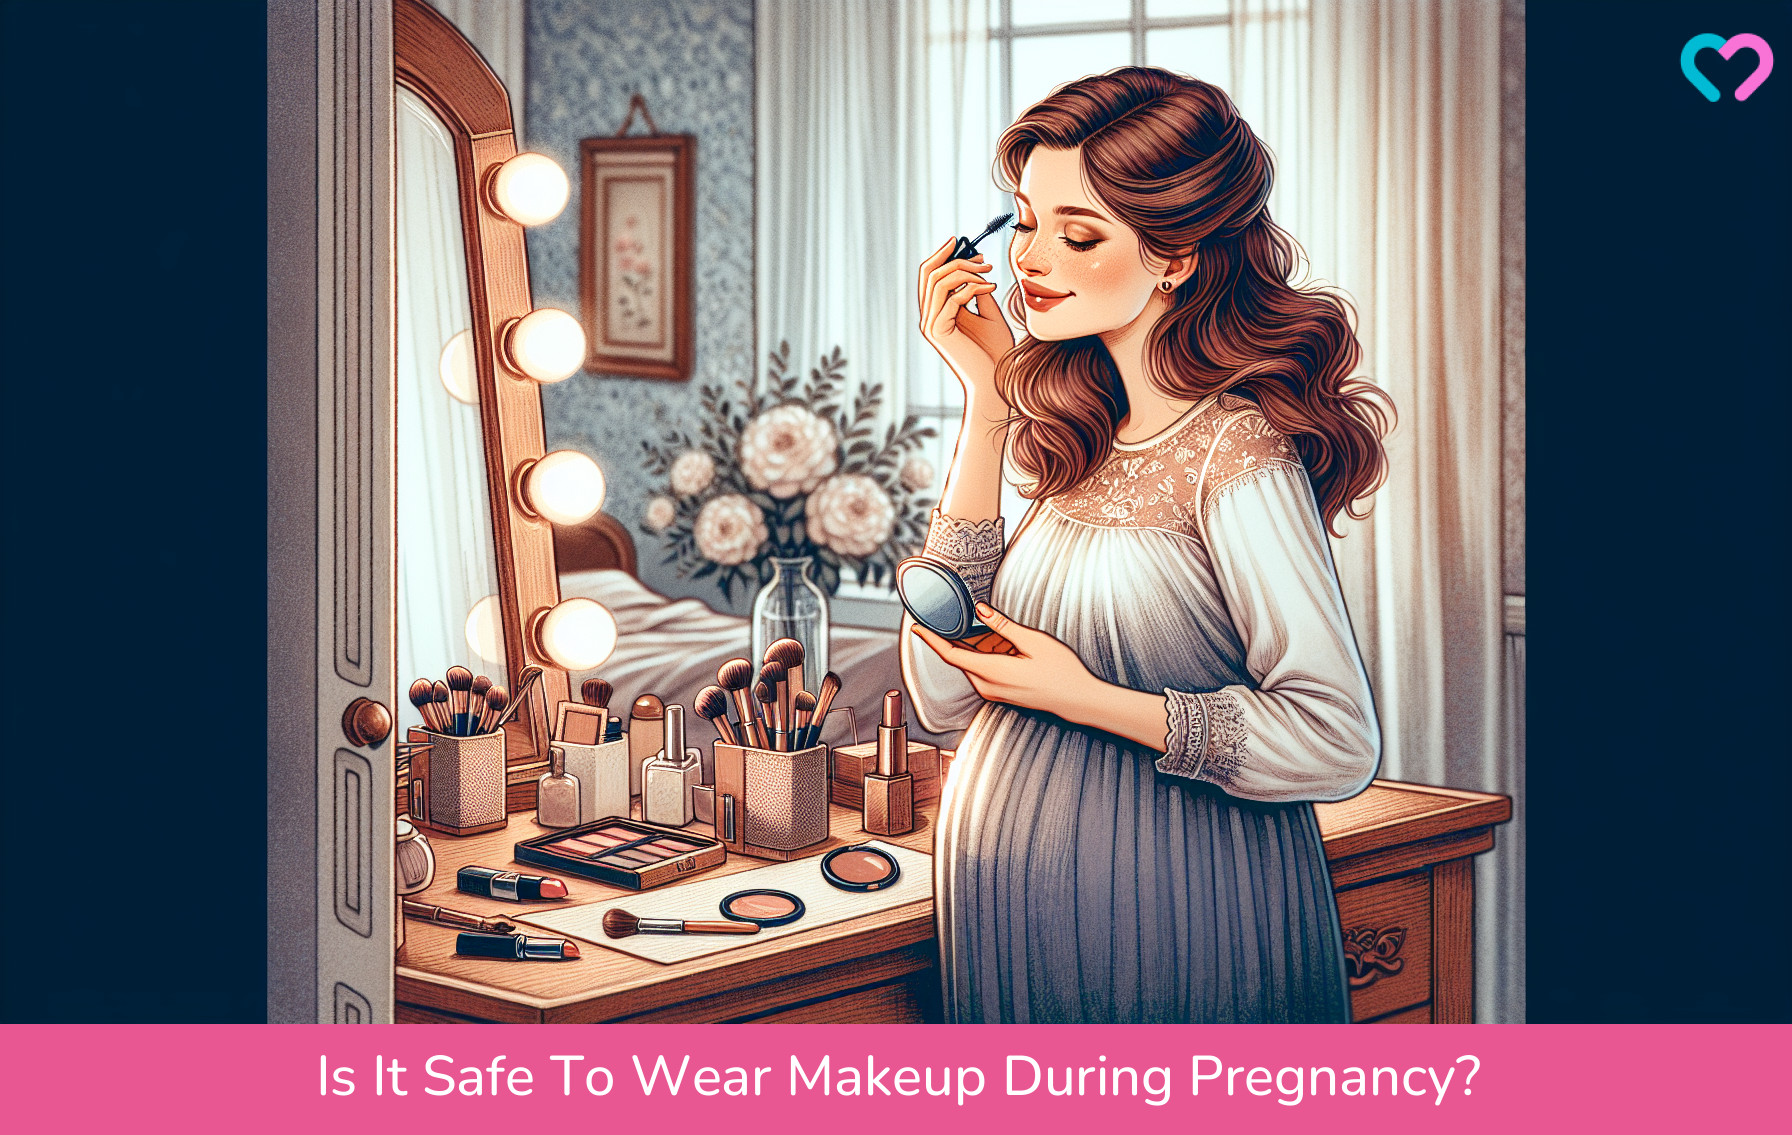 Make-Up During Pregnancy_illustration